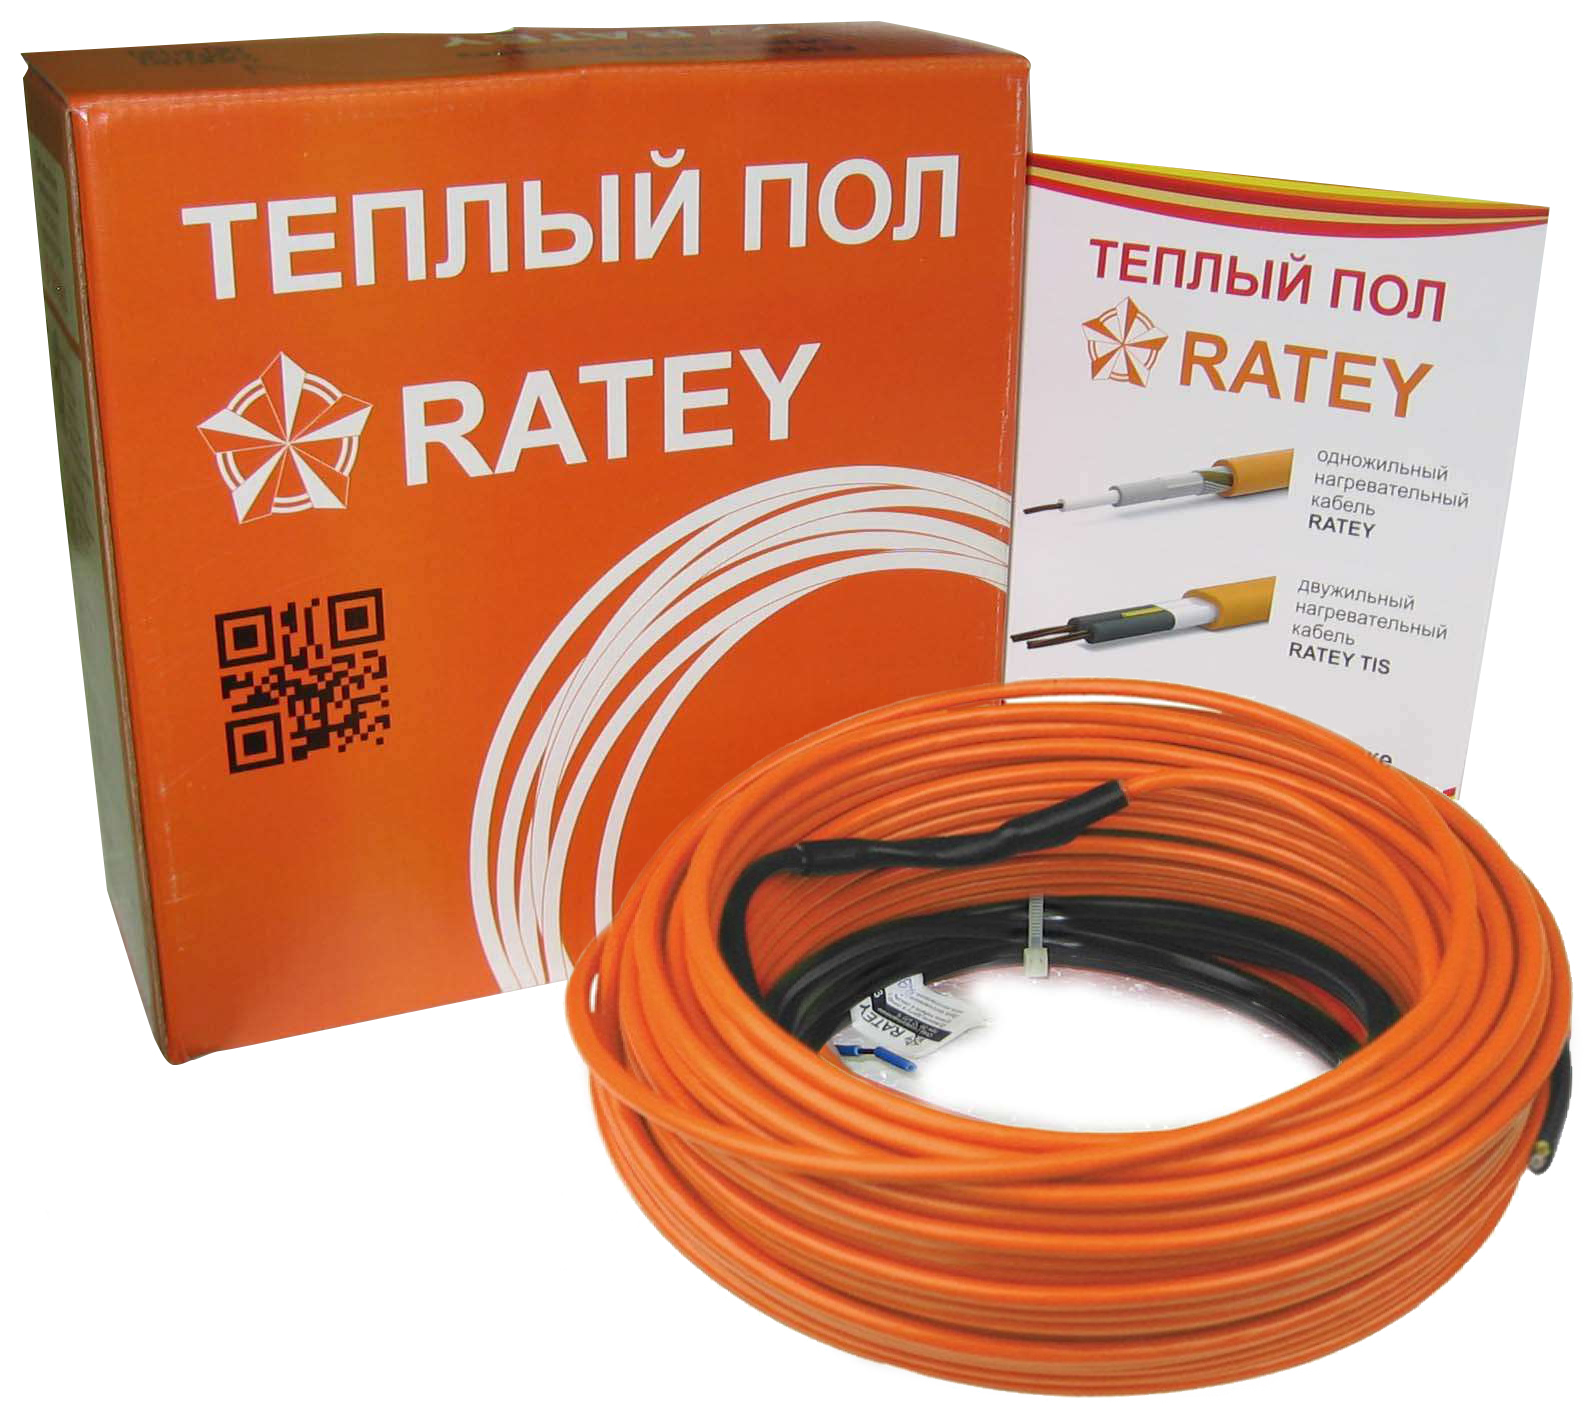 Тепла підлога Ratey під ламінат Ratey RD1 1.900